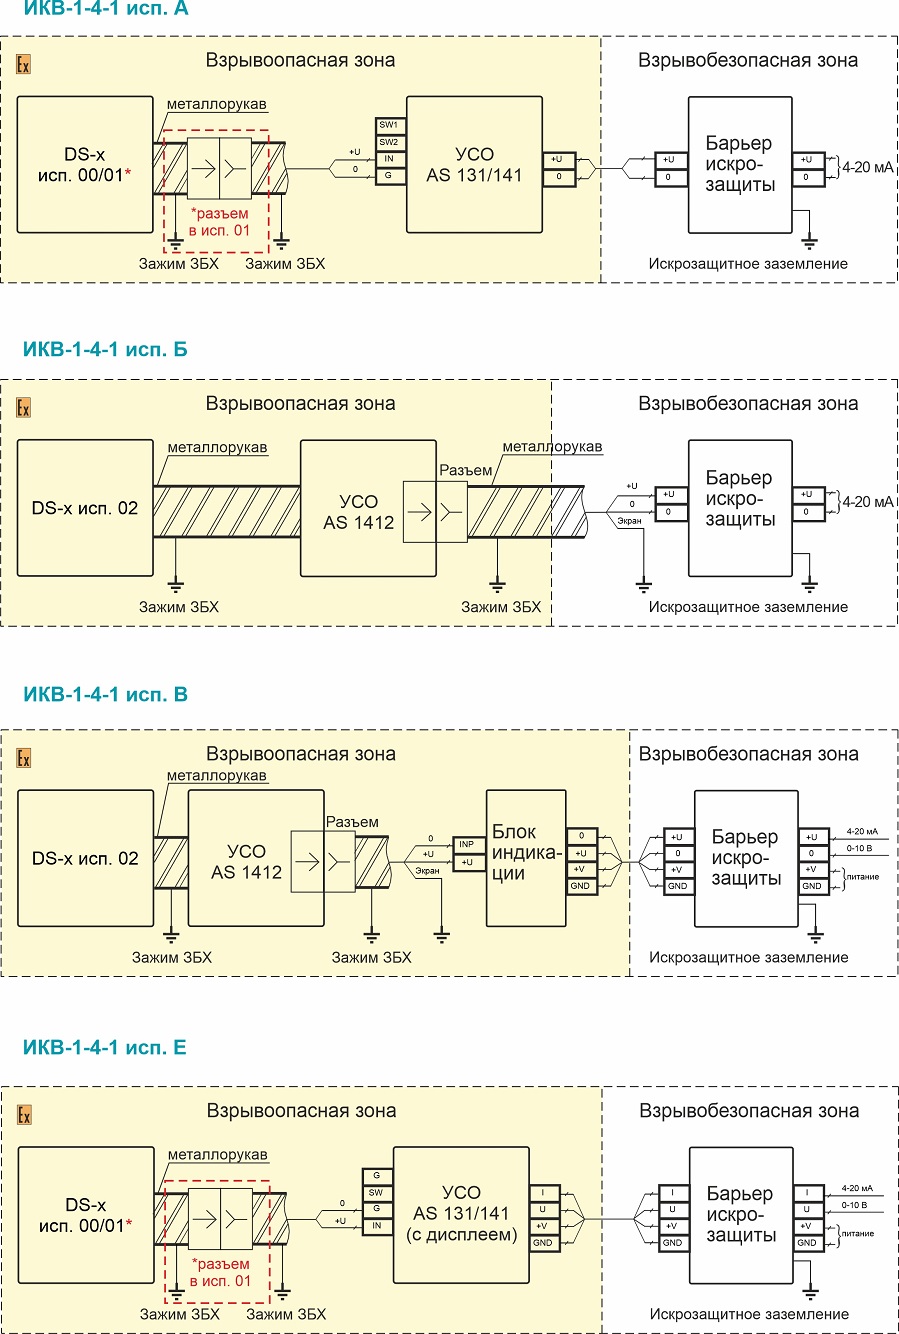 Схема подключения элементов виброизмерительного канала ИКВ-1-4-1